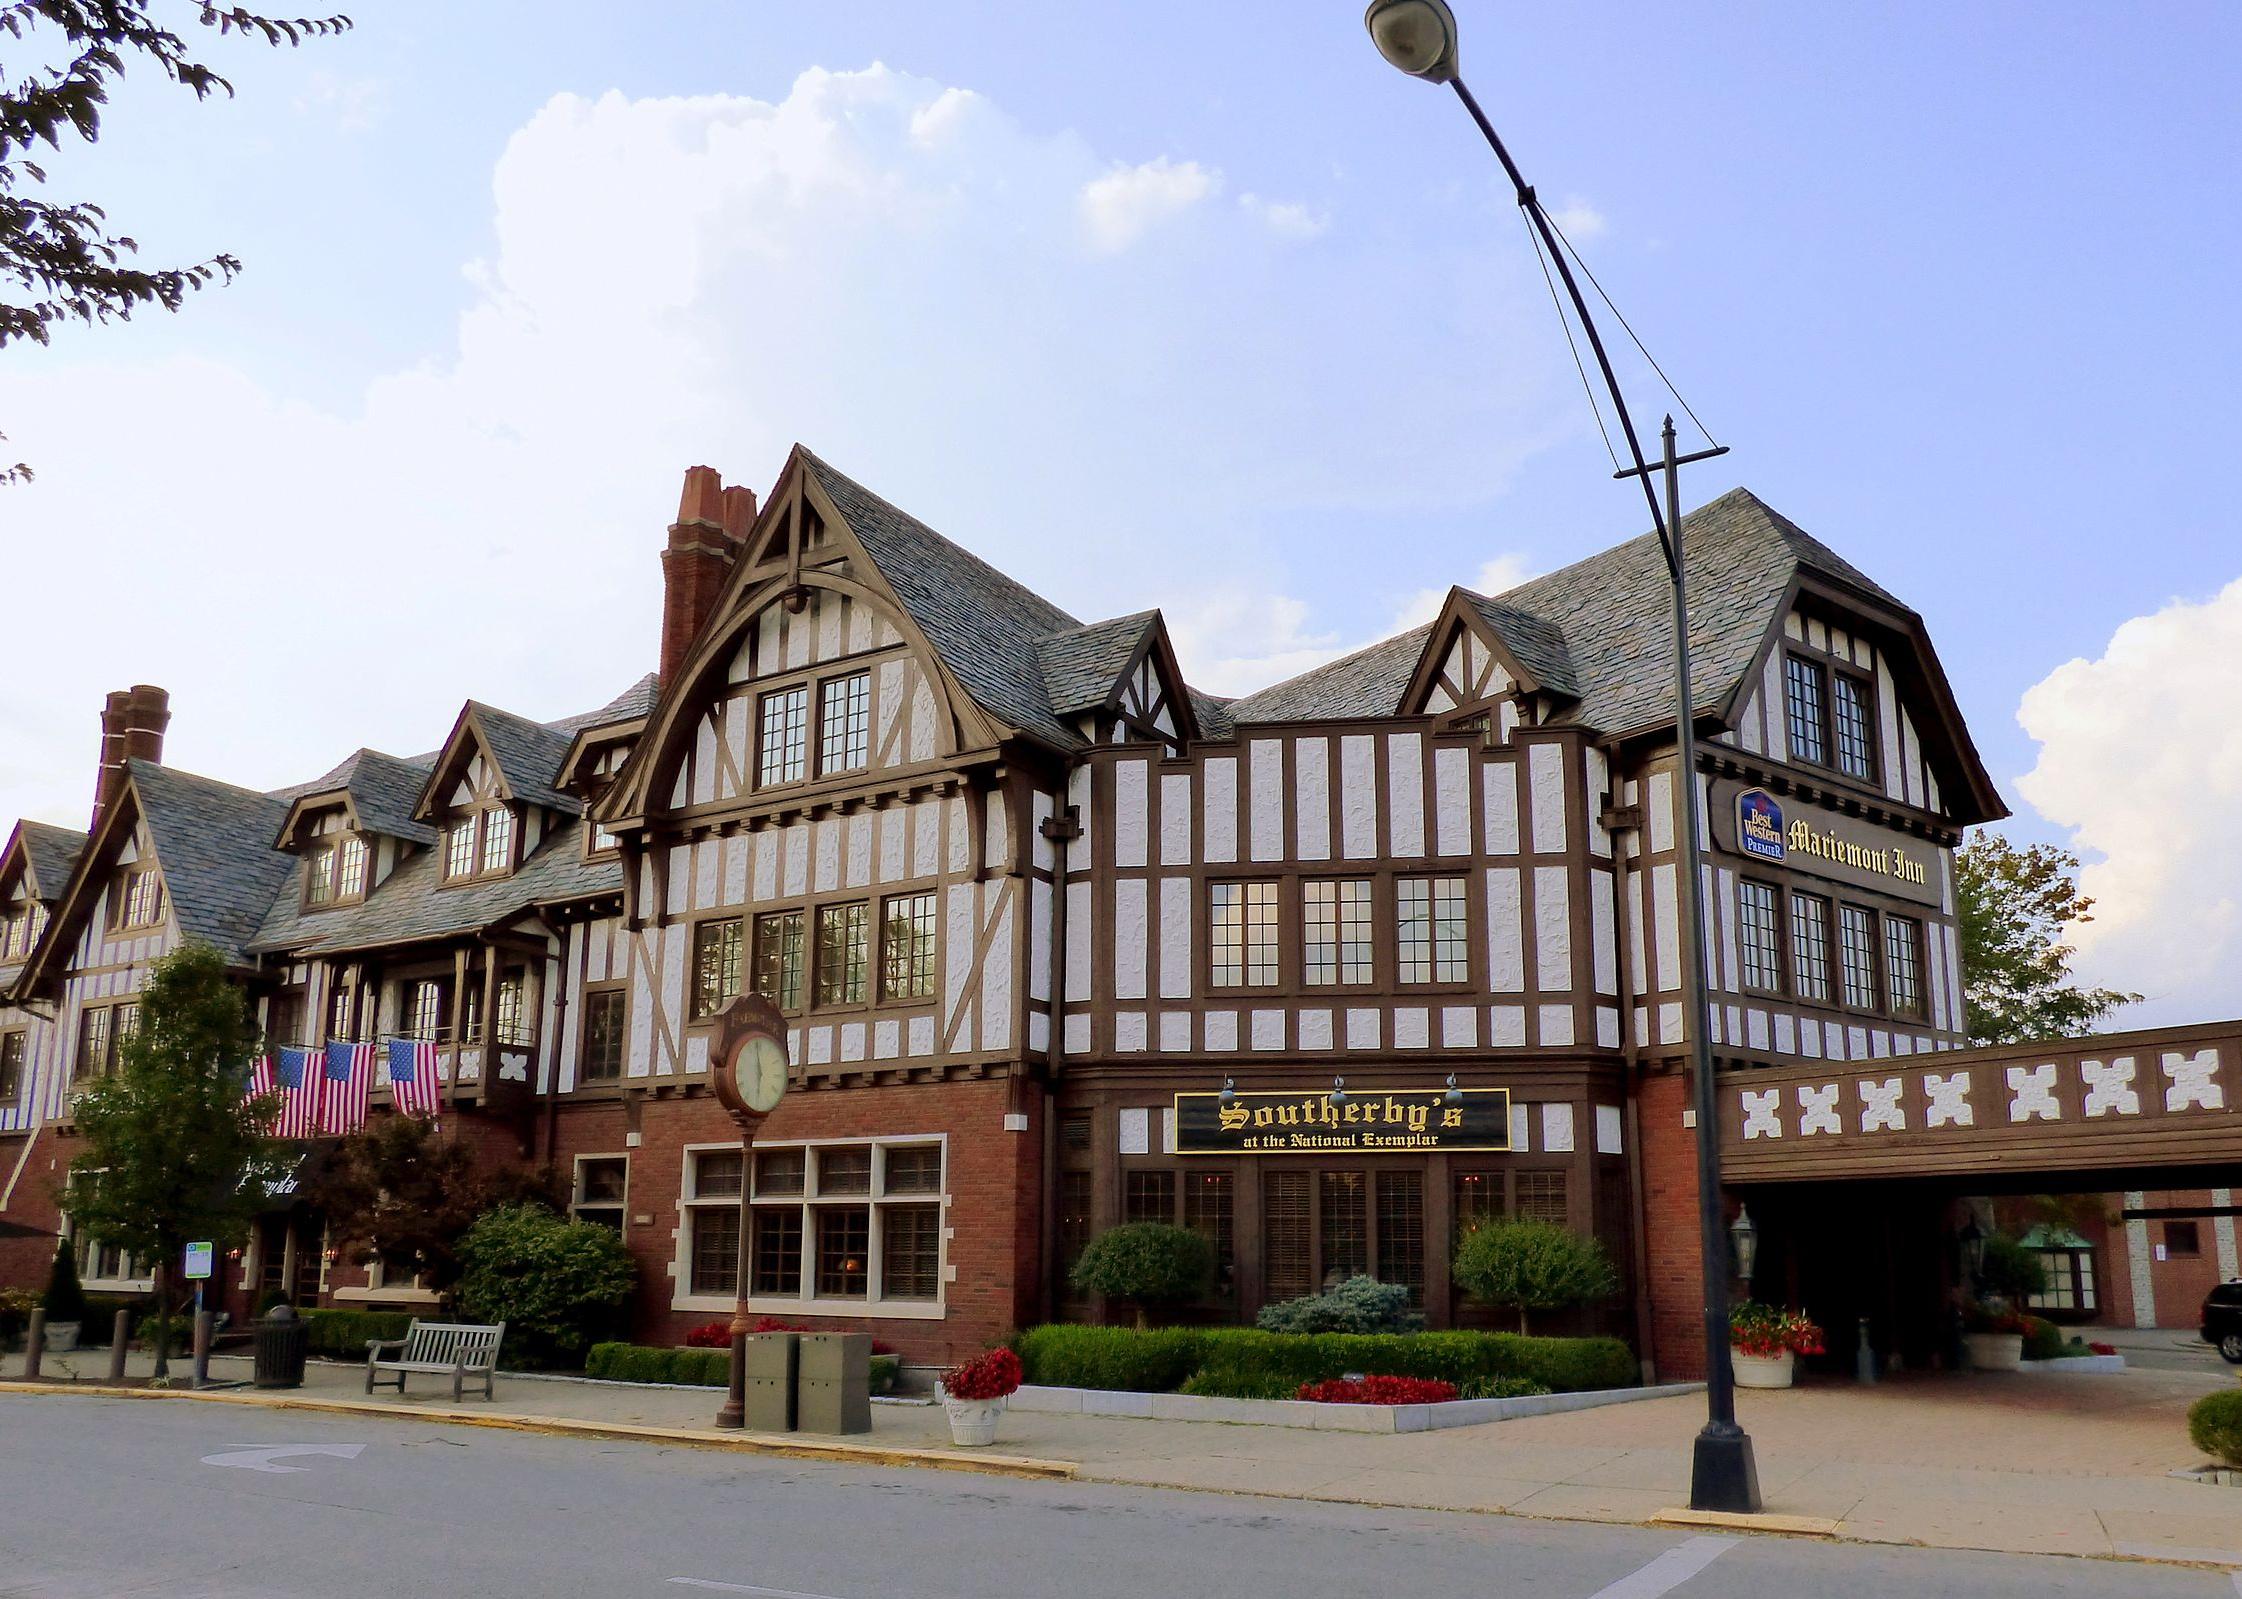 Mariemont Inn in downtown Mariemont, Ohio.